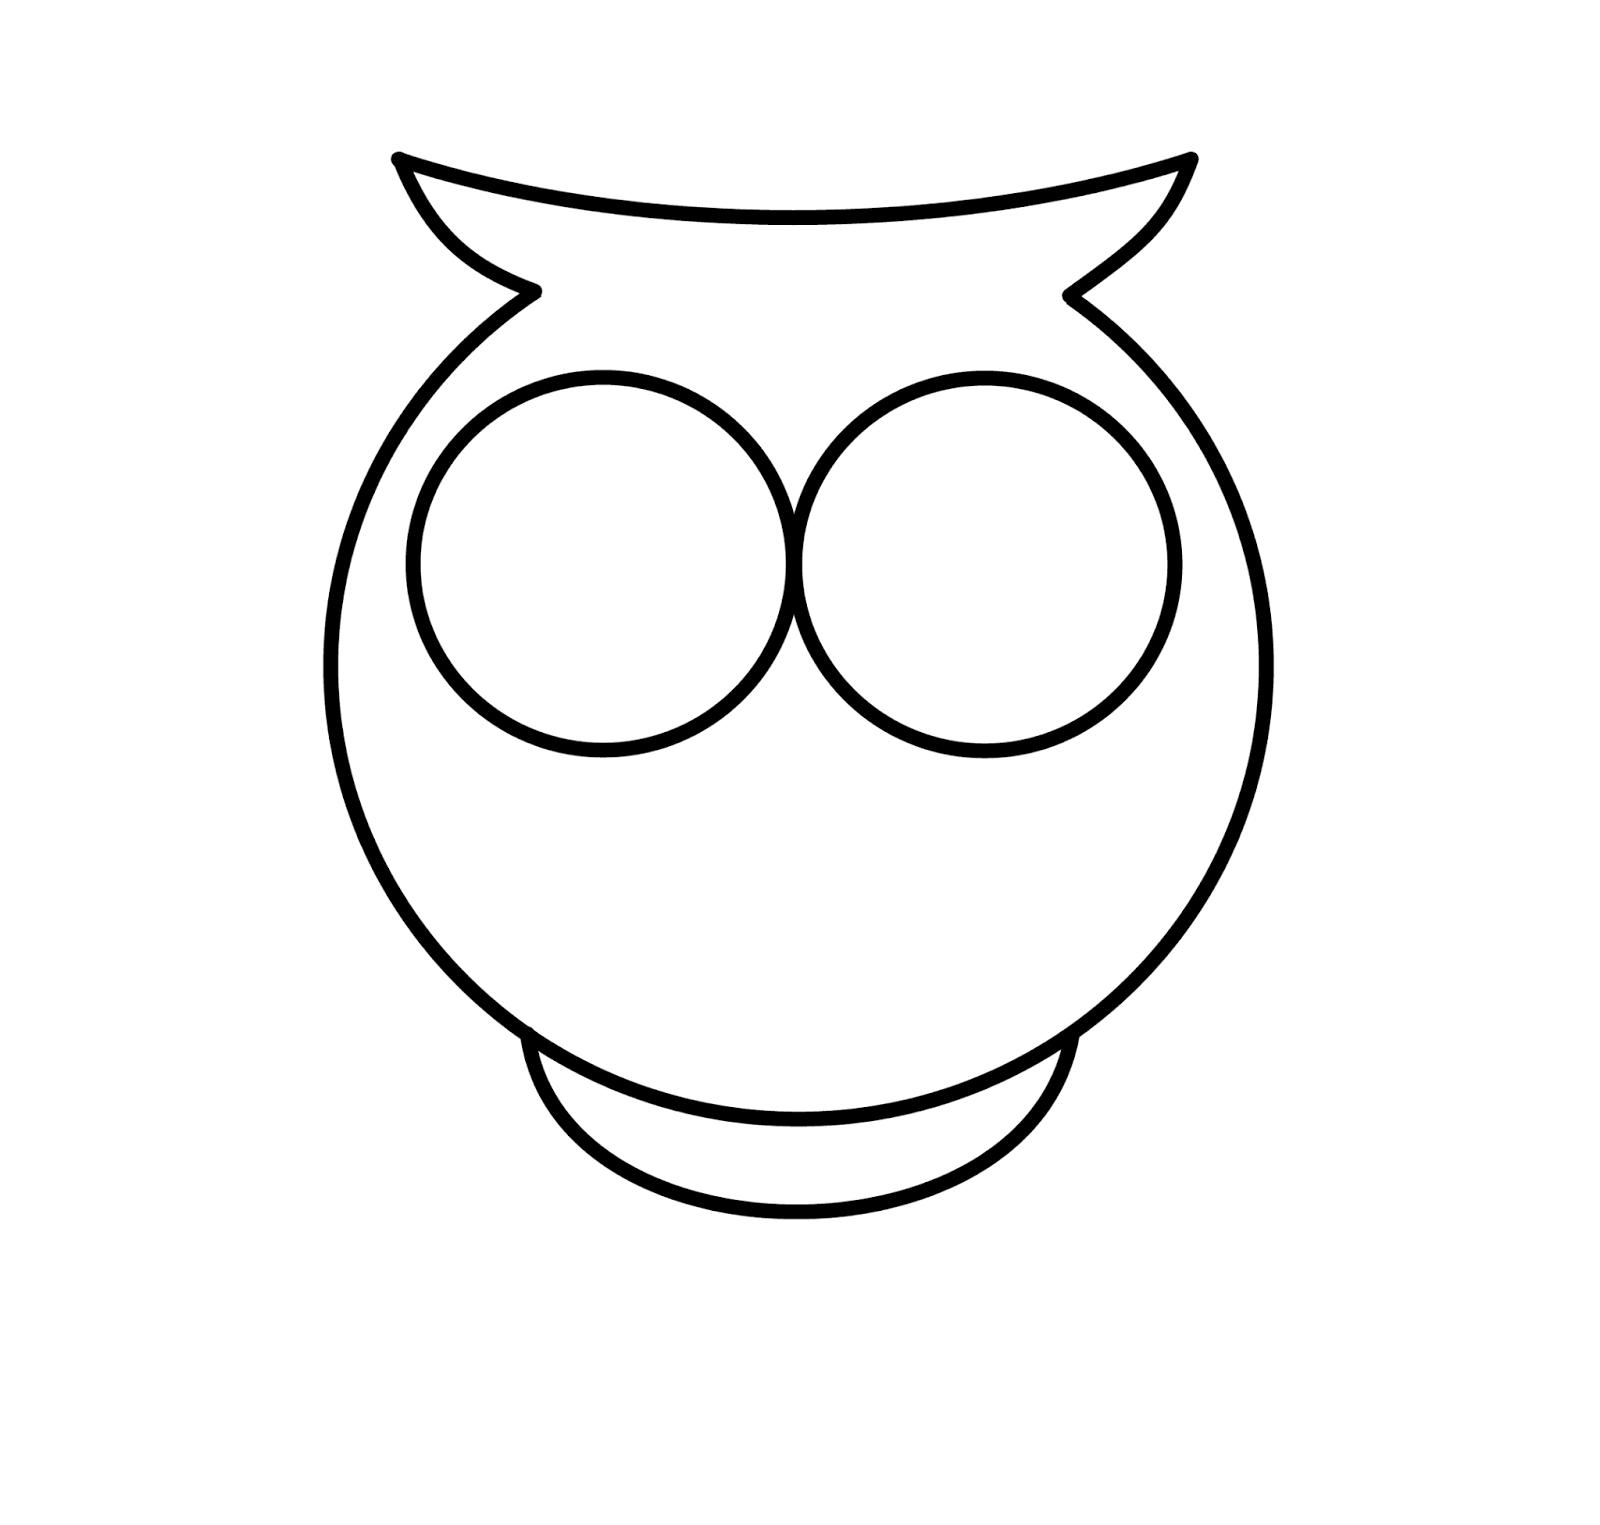 How To Draw Cartoons: Owl